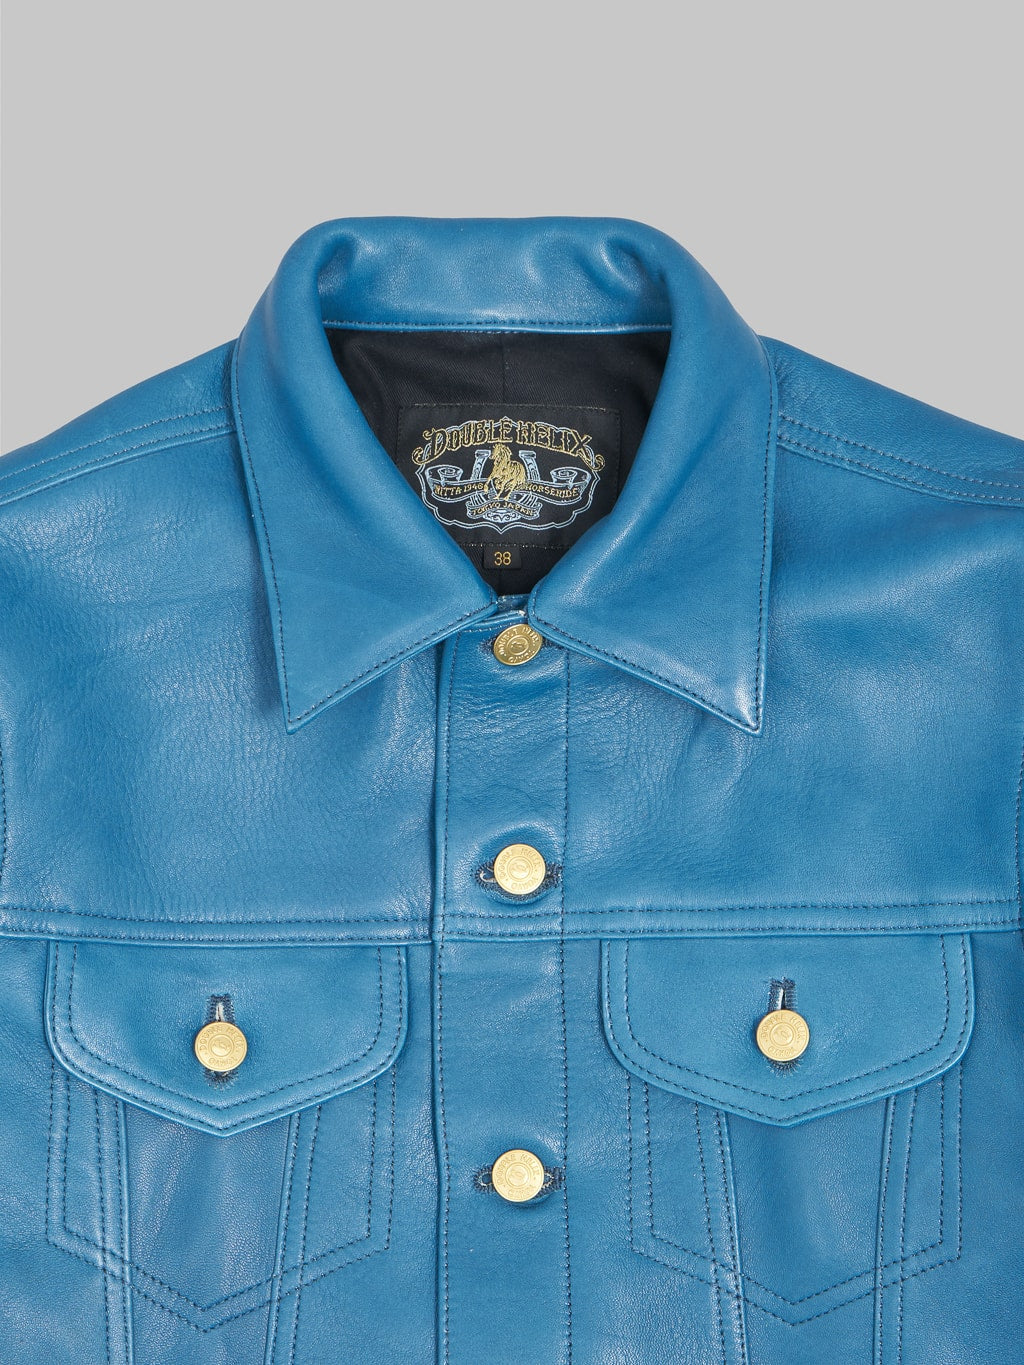 Double Helix Western Pioneer Indigo Dyed Horsehide Jacket